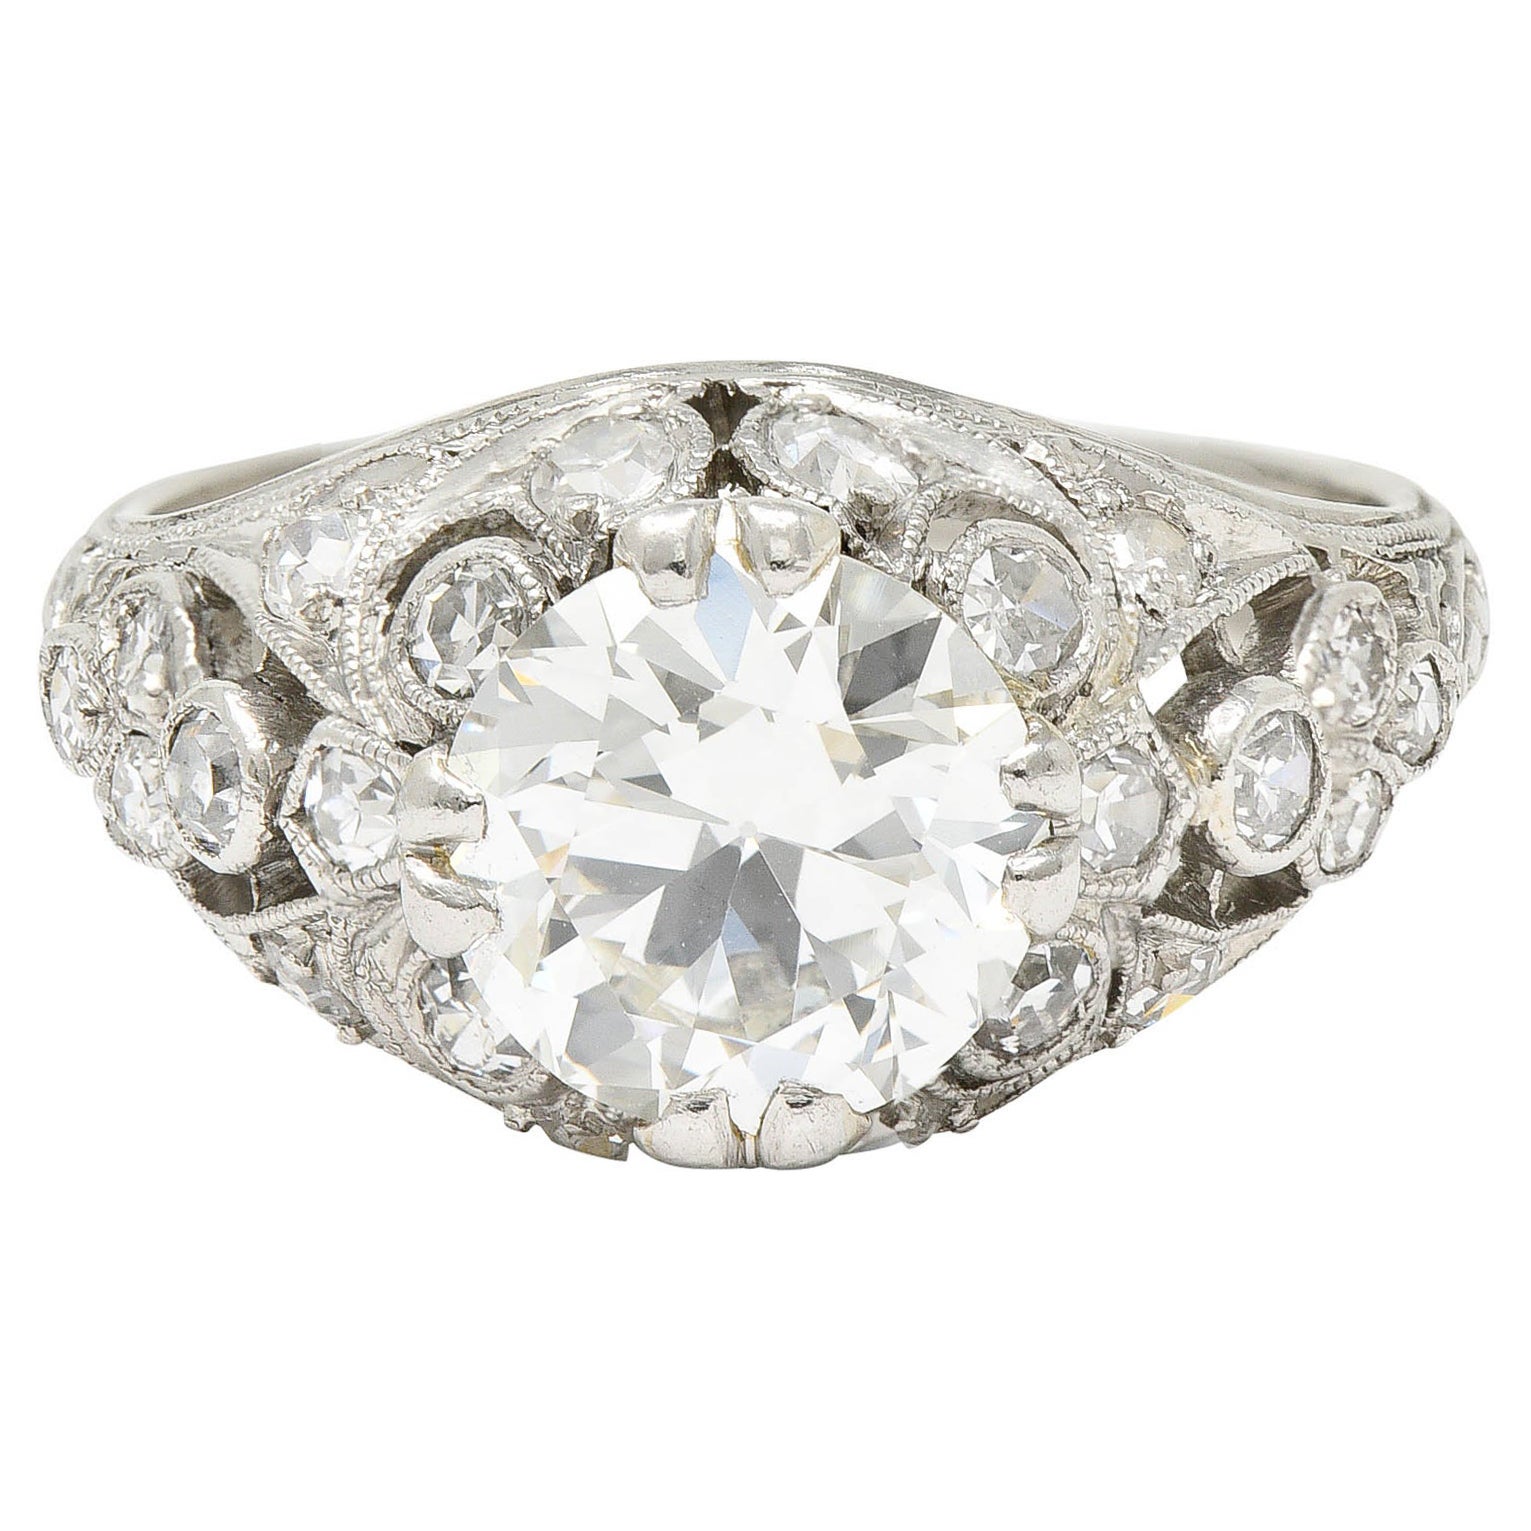 Edwardian 2.33 Carats Diamond Platinum Engagement Ring Circa 1910